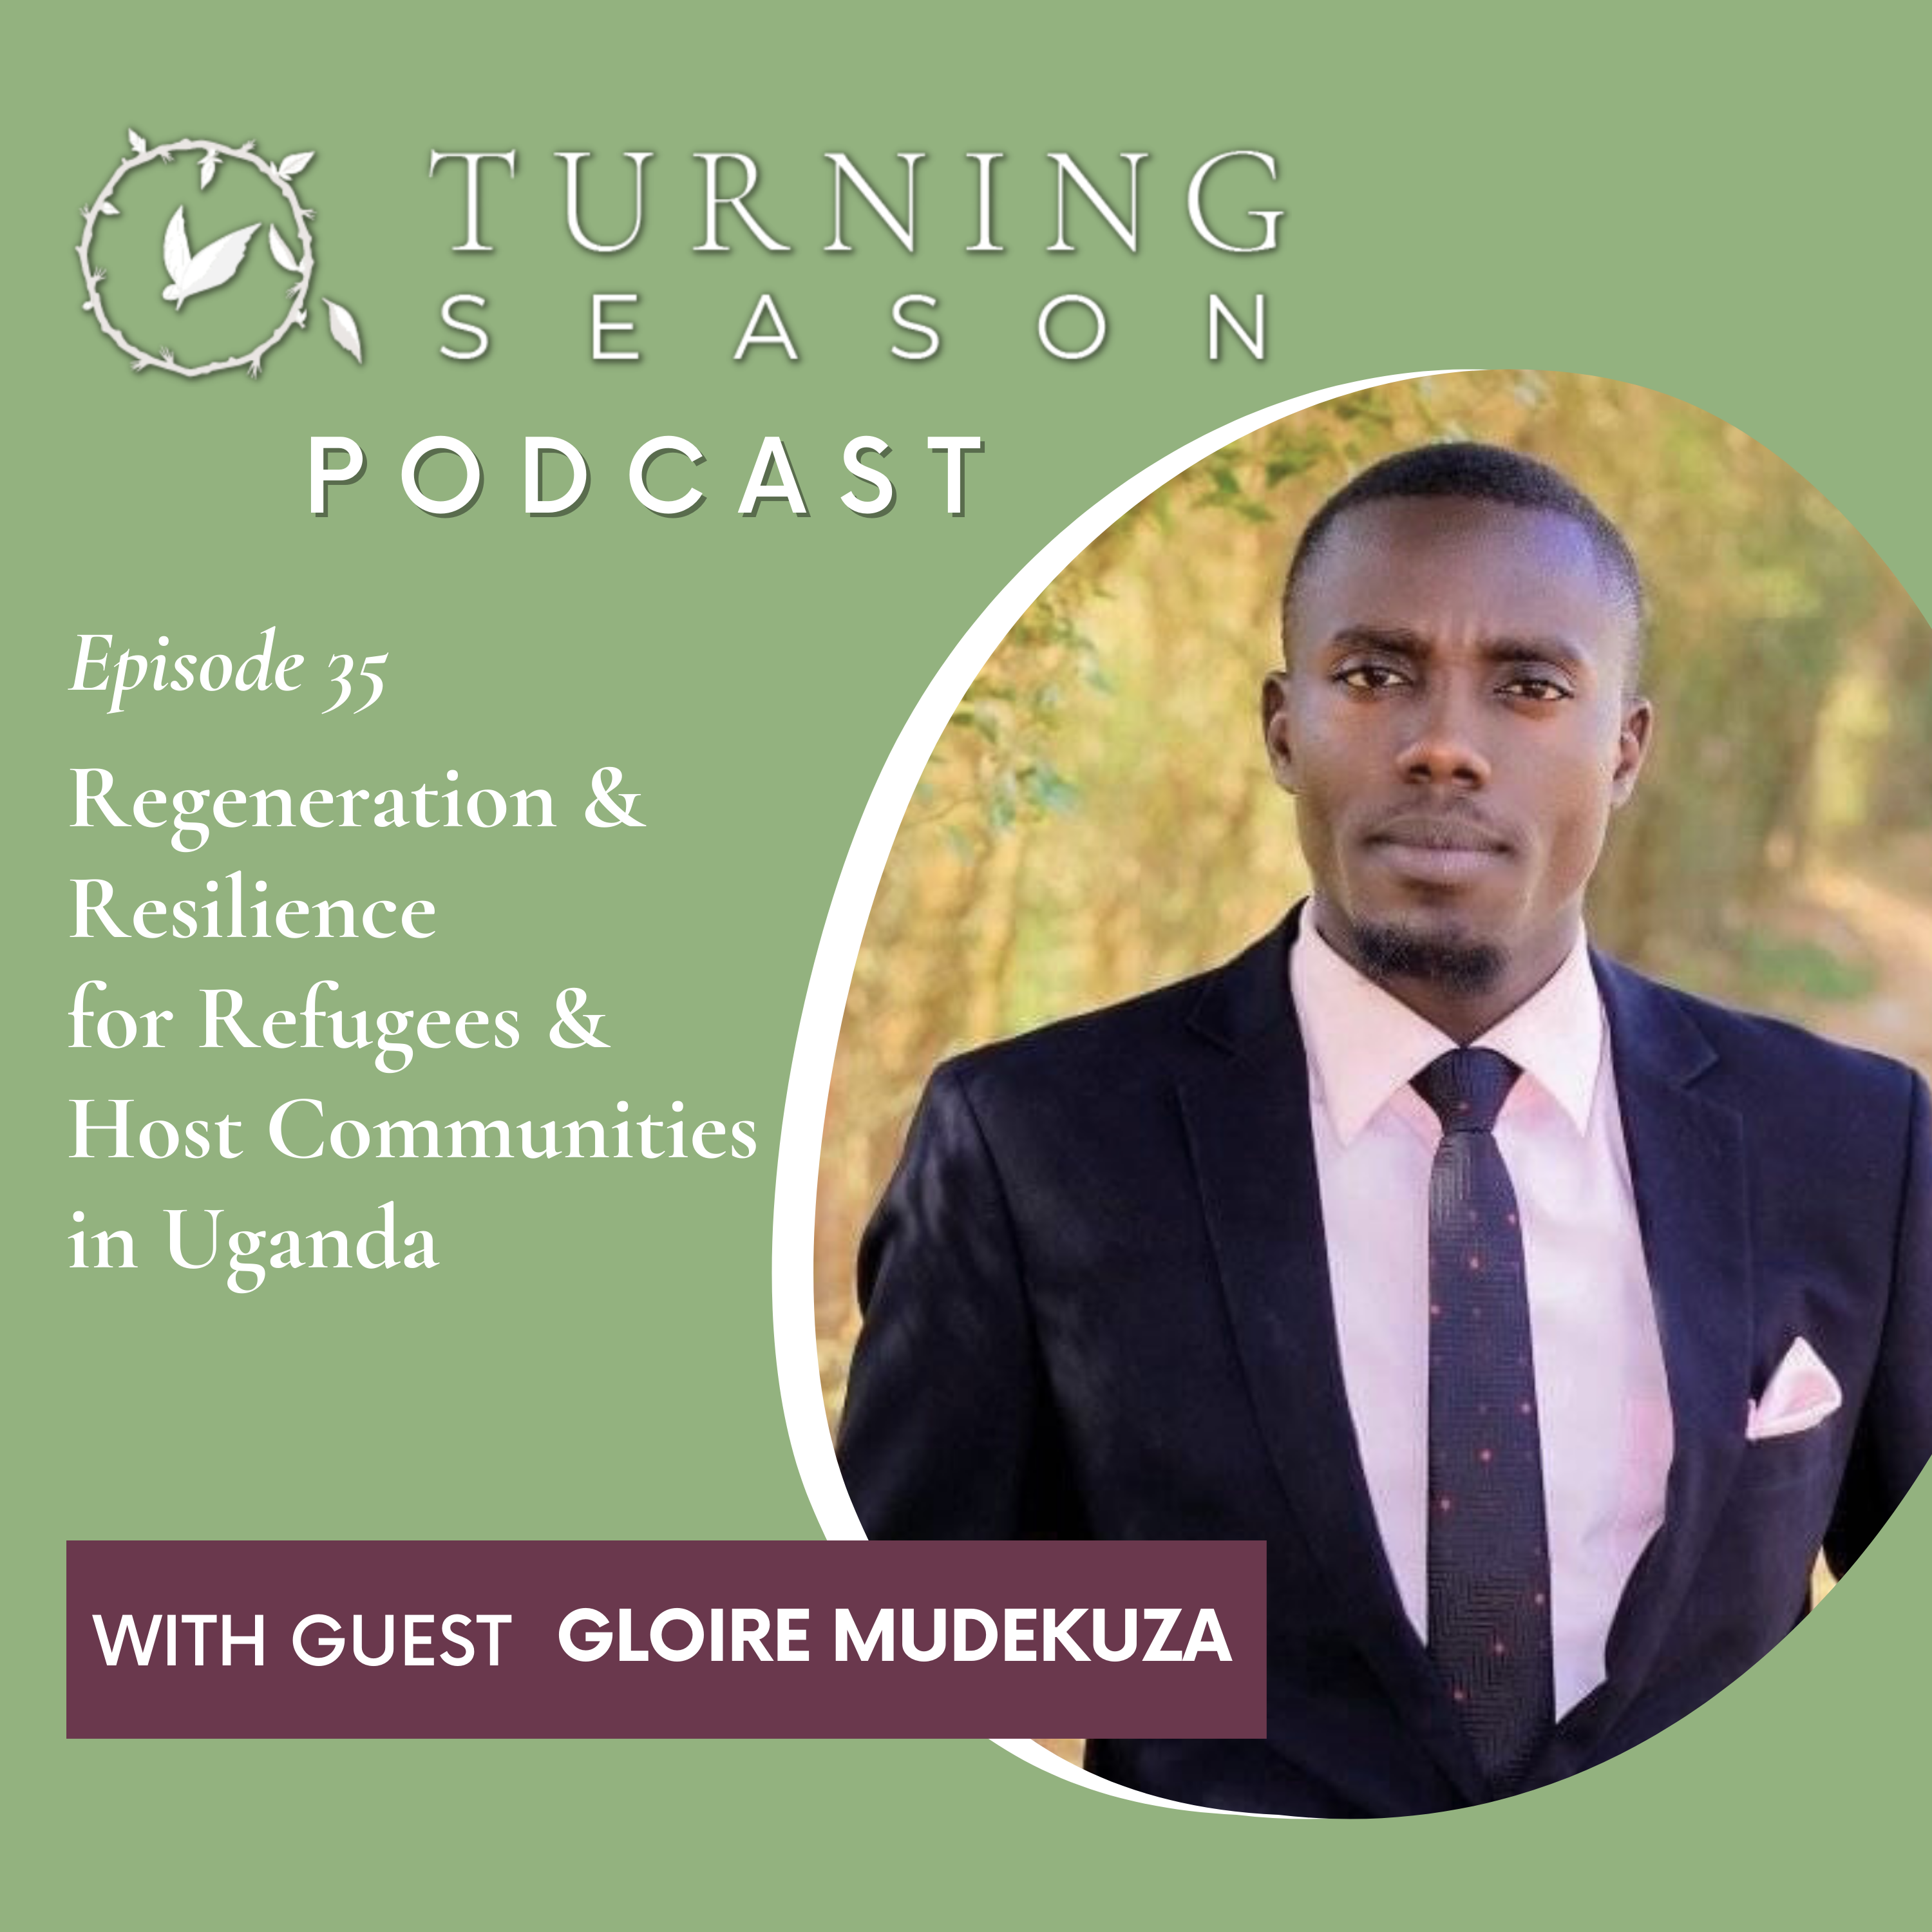 Turning Season Podcast Episode 35 with Gloire Mudekuza hosted by Leilani Navar turningseason.com